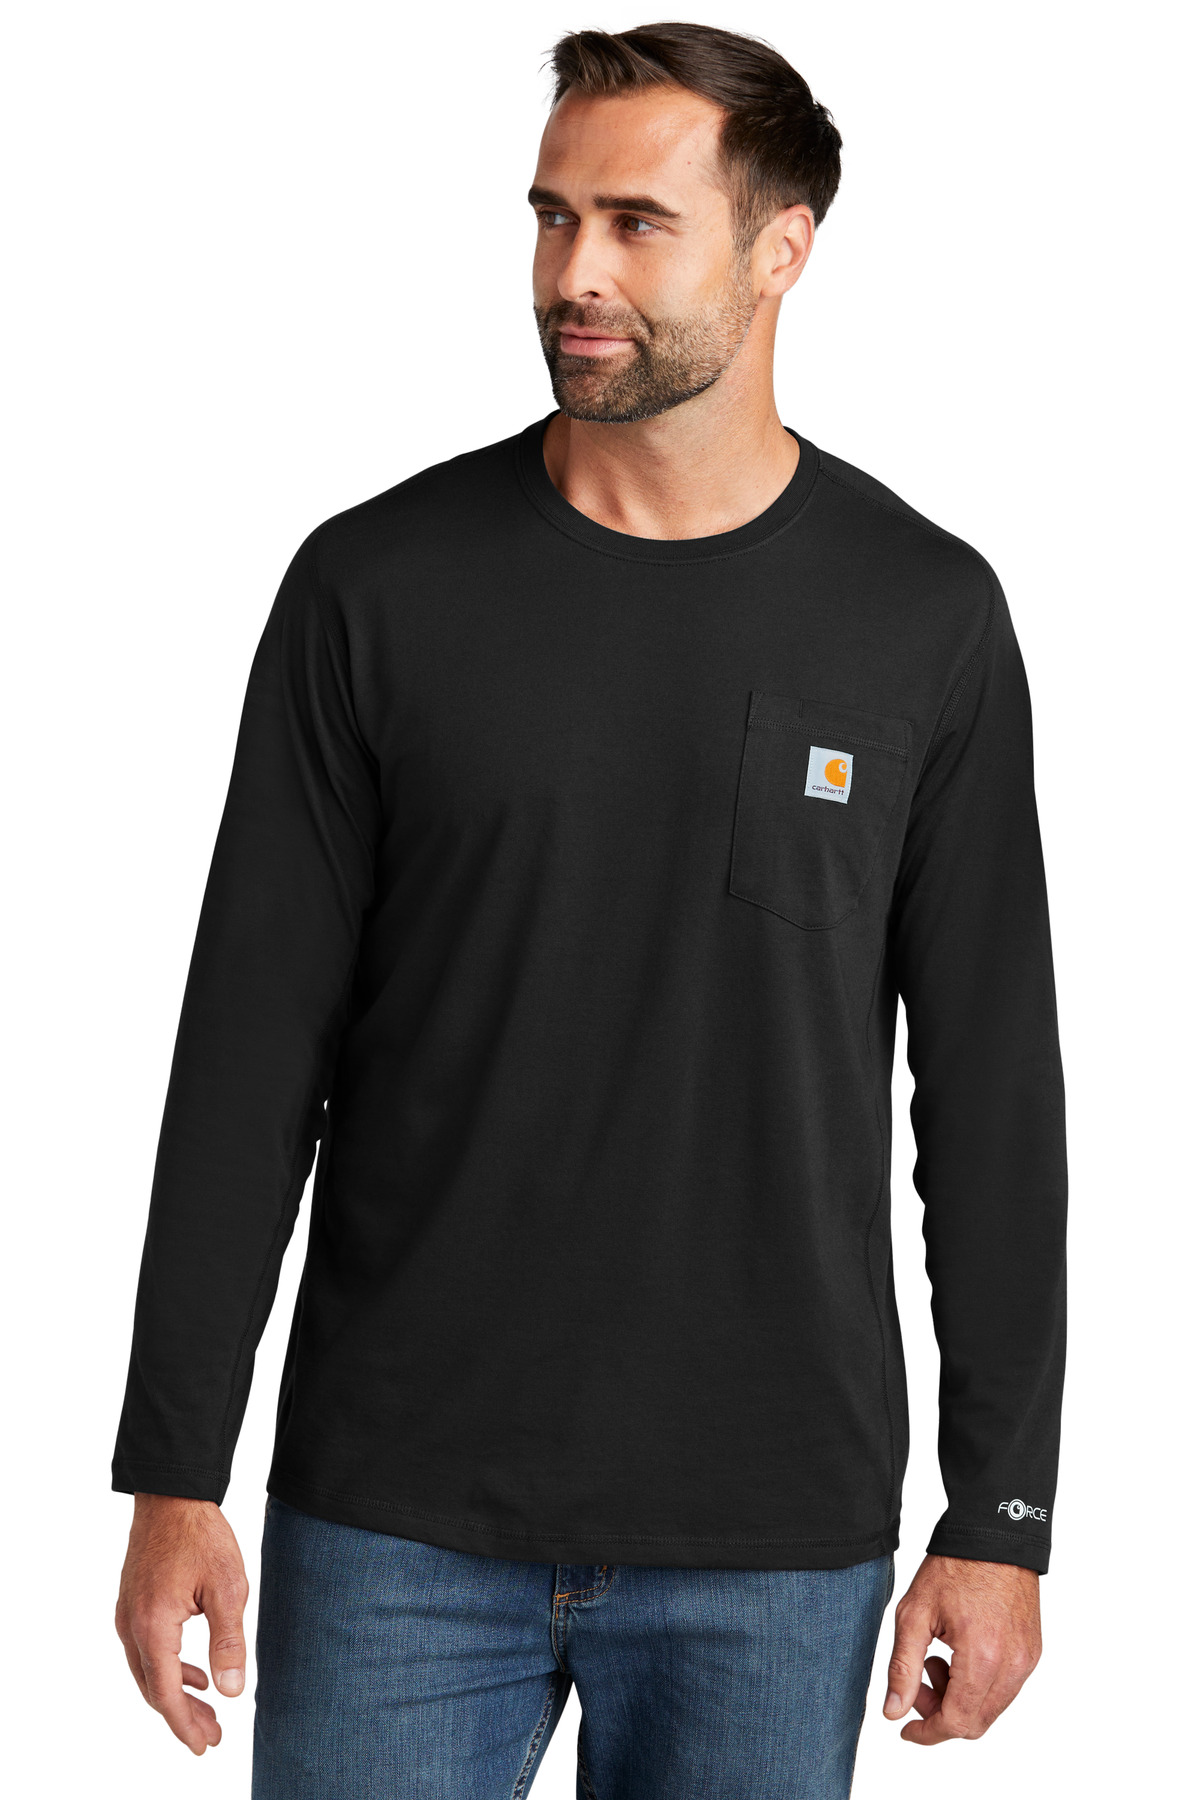 Carhartt Force Long Sleeve Pocket T-Shirt-Carhartt